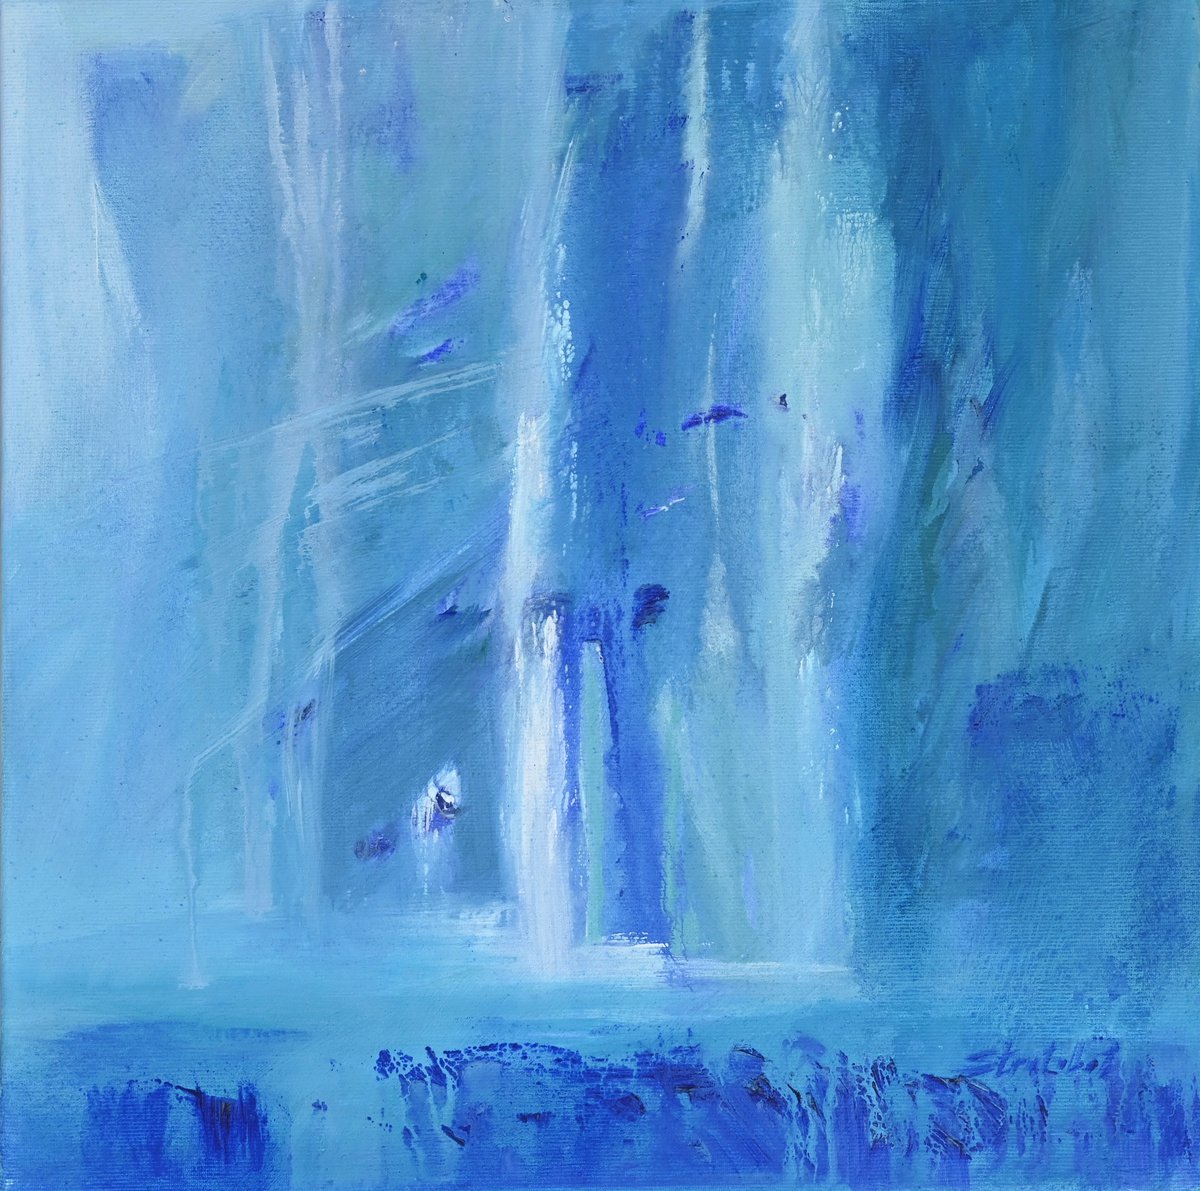 Swiss waterfalls 3 by Teodor Stratulat